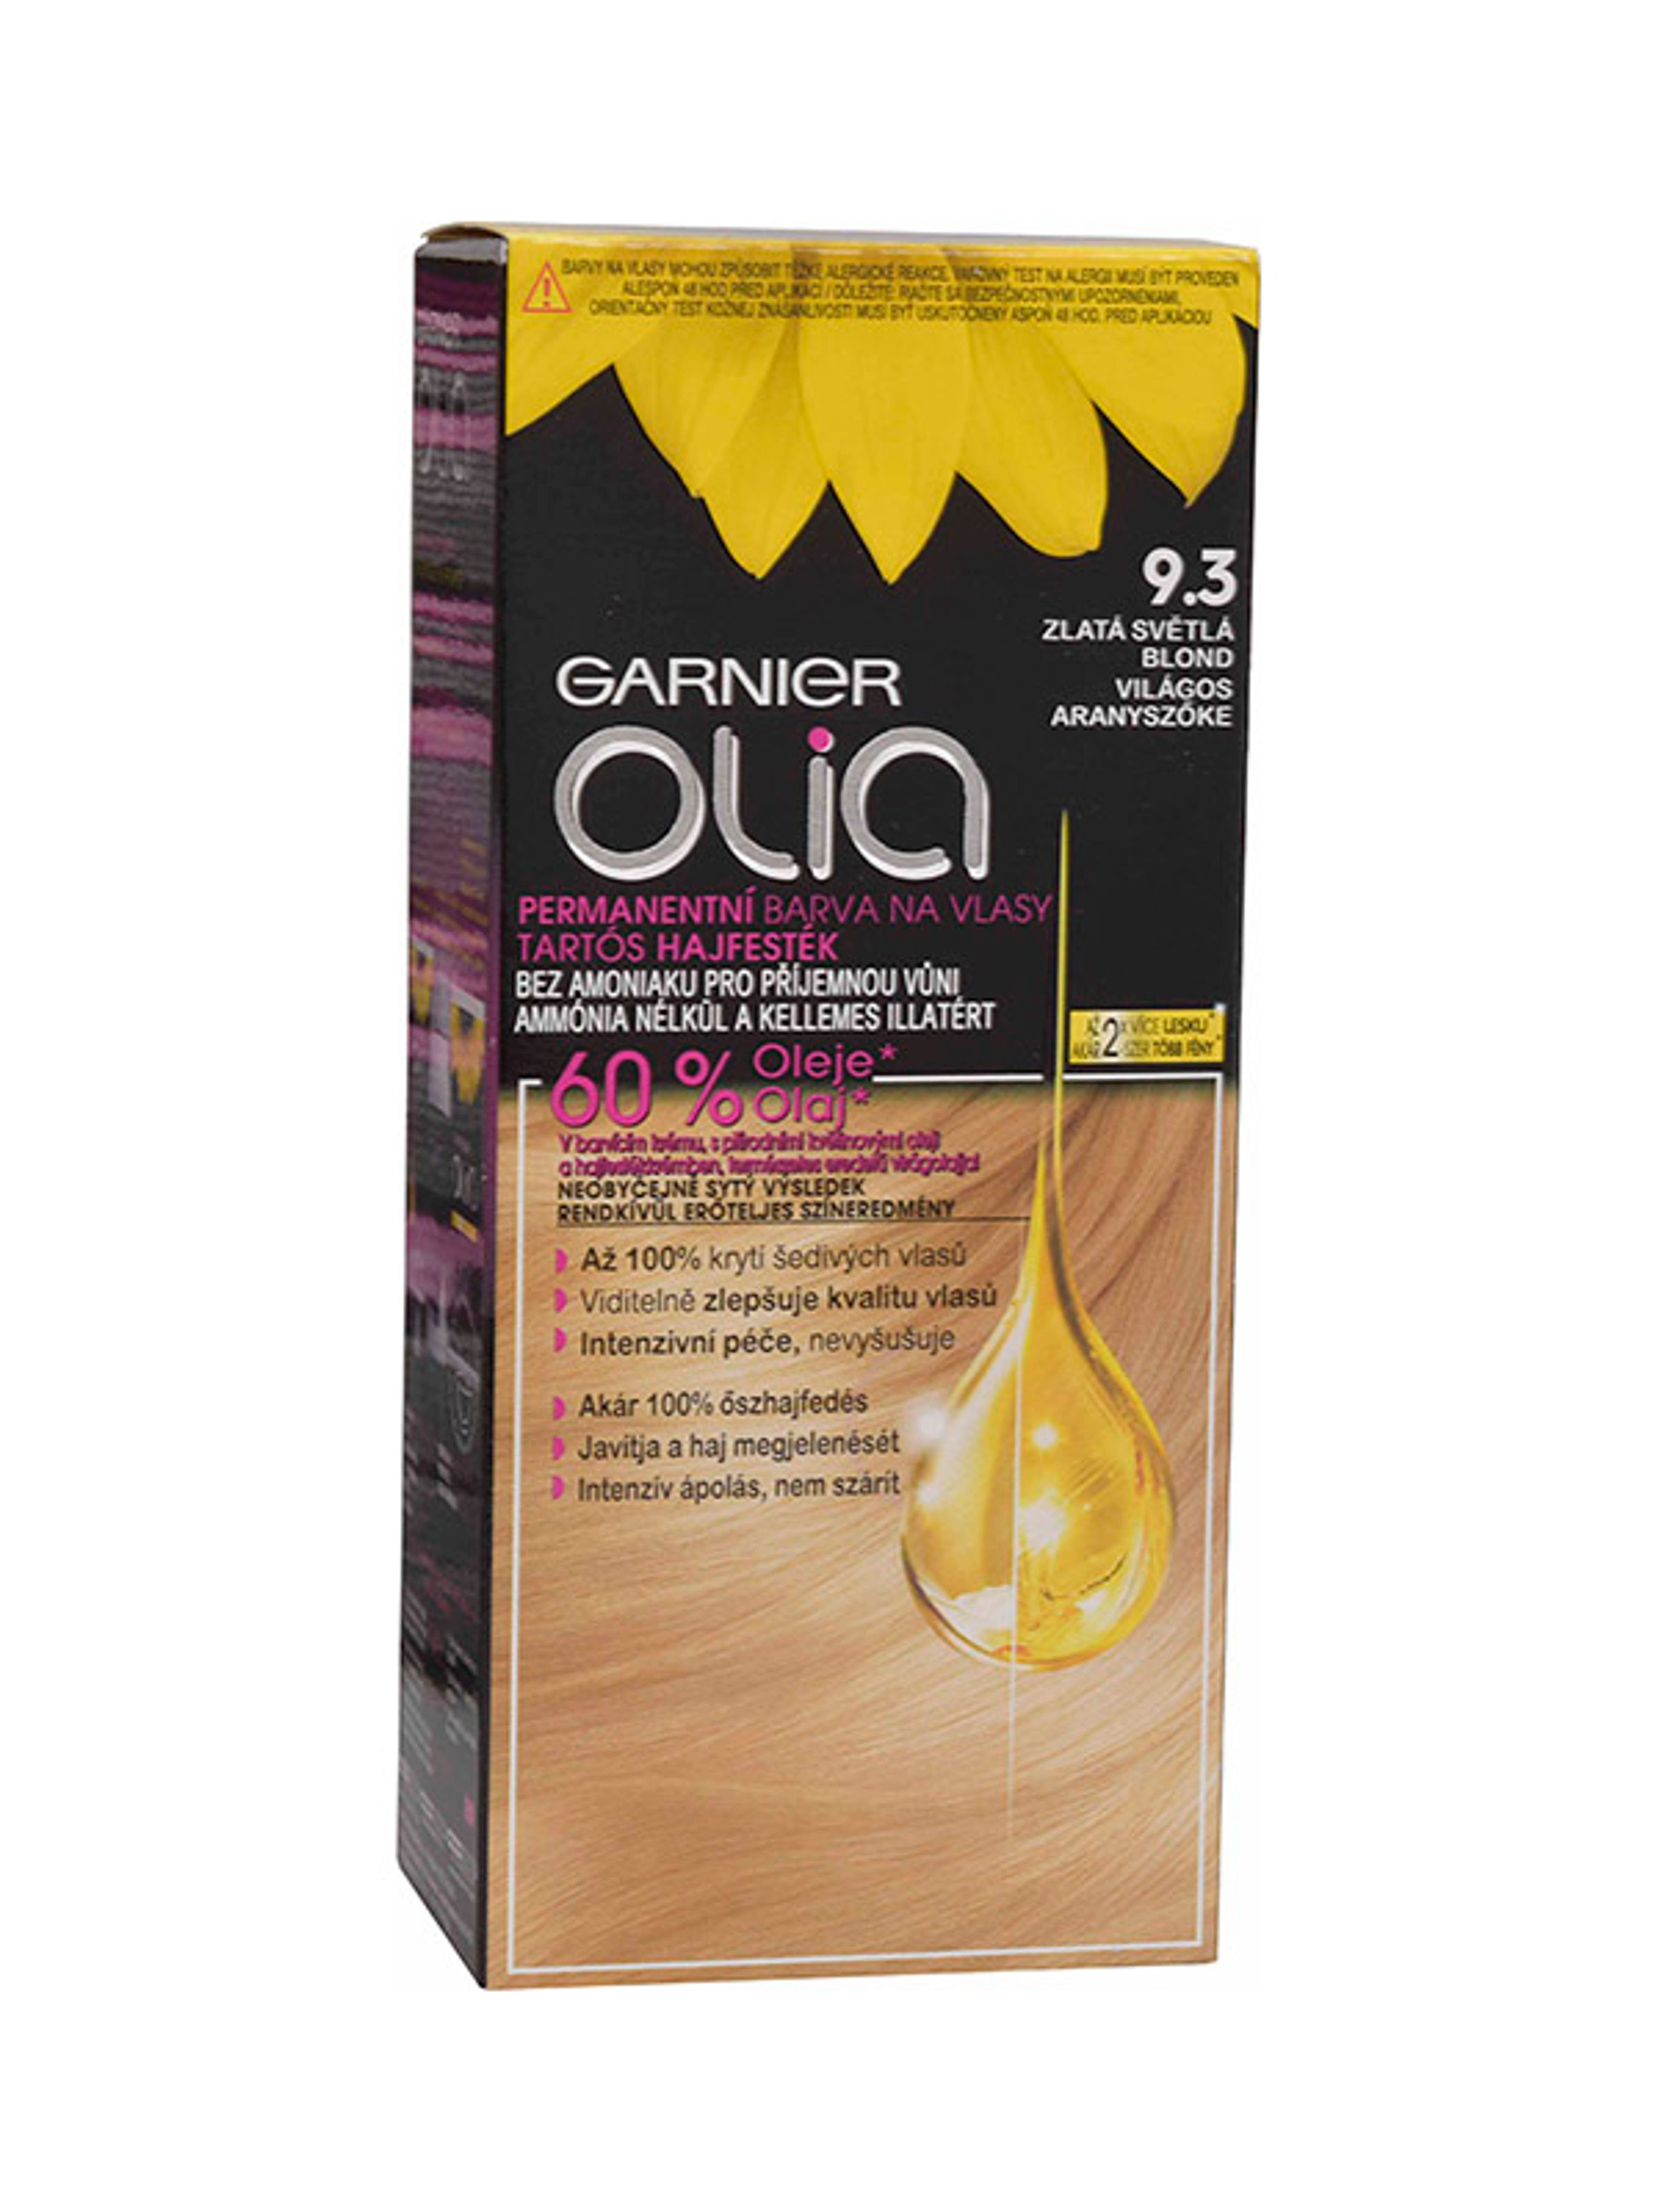 Garnier Olia tartós hajfesték 9.3 Világos aranyszőke - 1 db-1